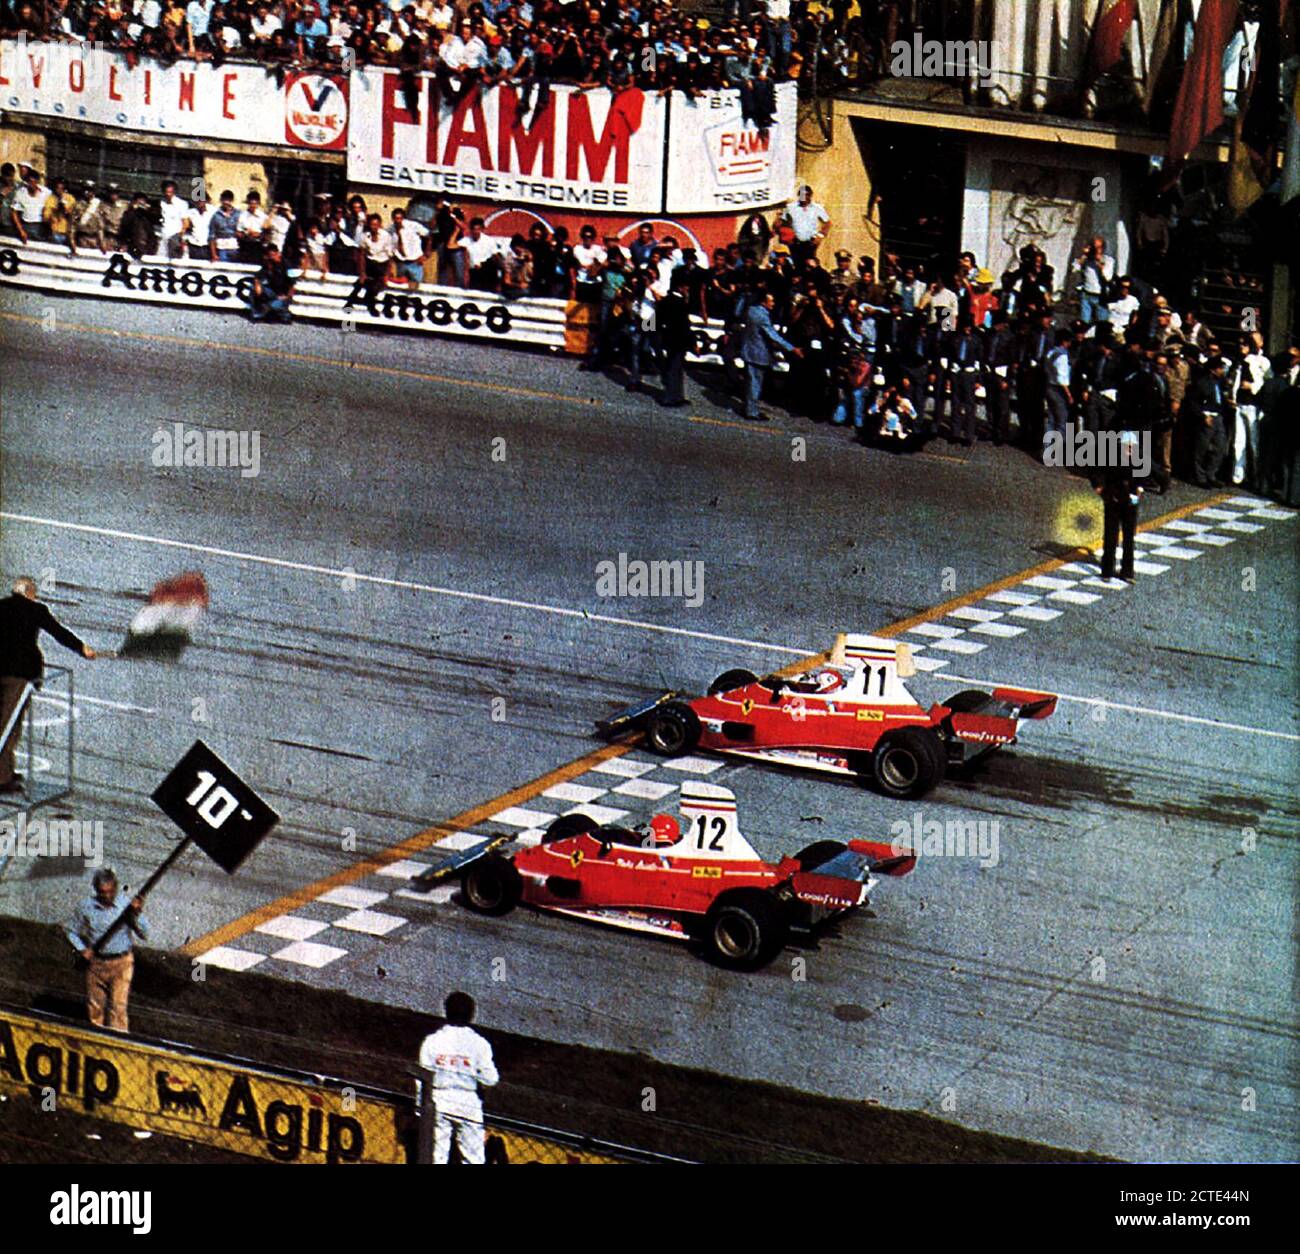 Monza, Autodromo Nazionale, 7. September 1975. Die beiden Scuderia Ferrari, der Schweizer Clay Regazzoni (Nr. 11) und der österreichischen Niki Lauda (Nr. 12) Diese letzte poleman, nehmen Sie die Leitung an der Start der XLVI Grand Prix von Italien an Bord ihrer Ferrari 312 T. Stockfoto